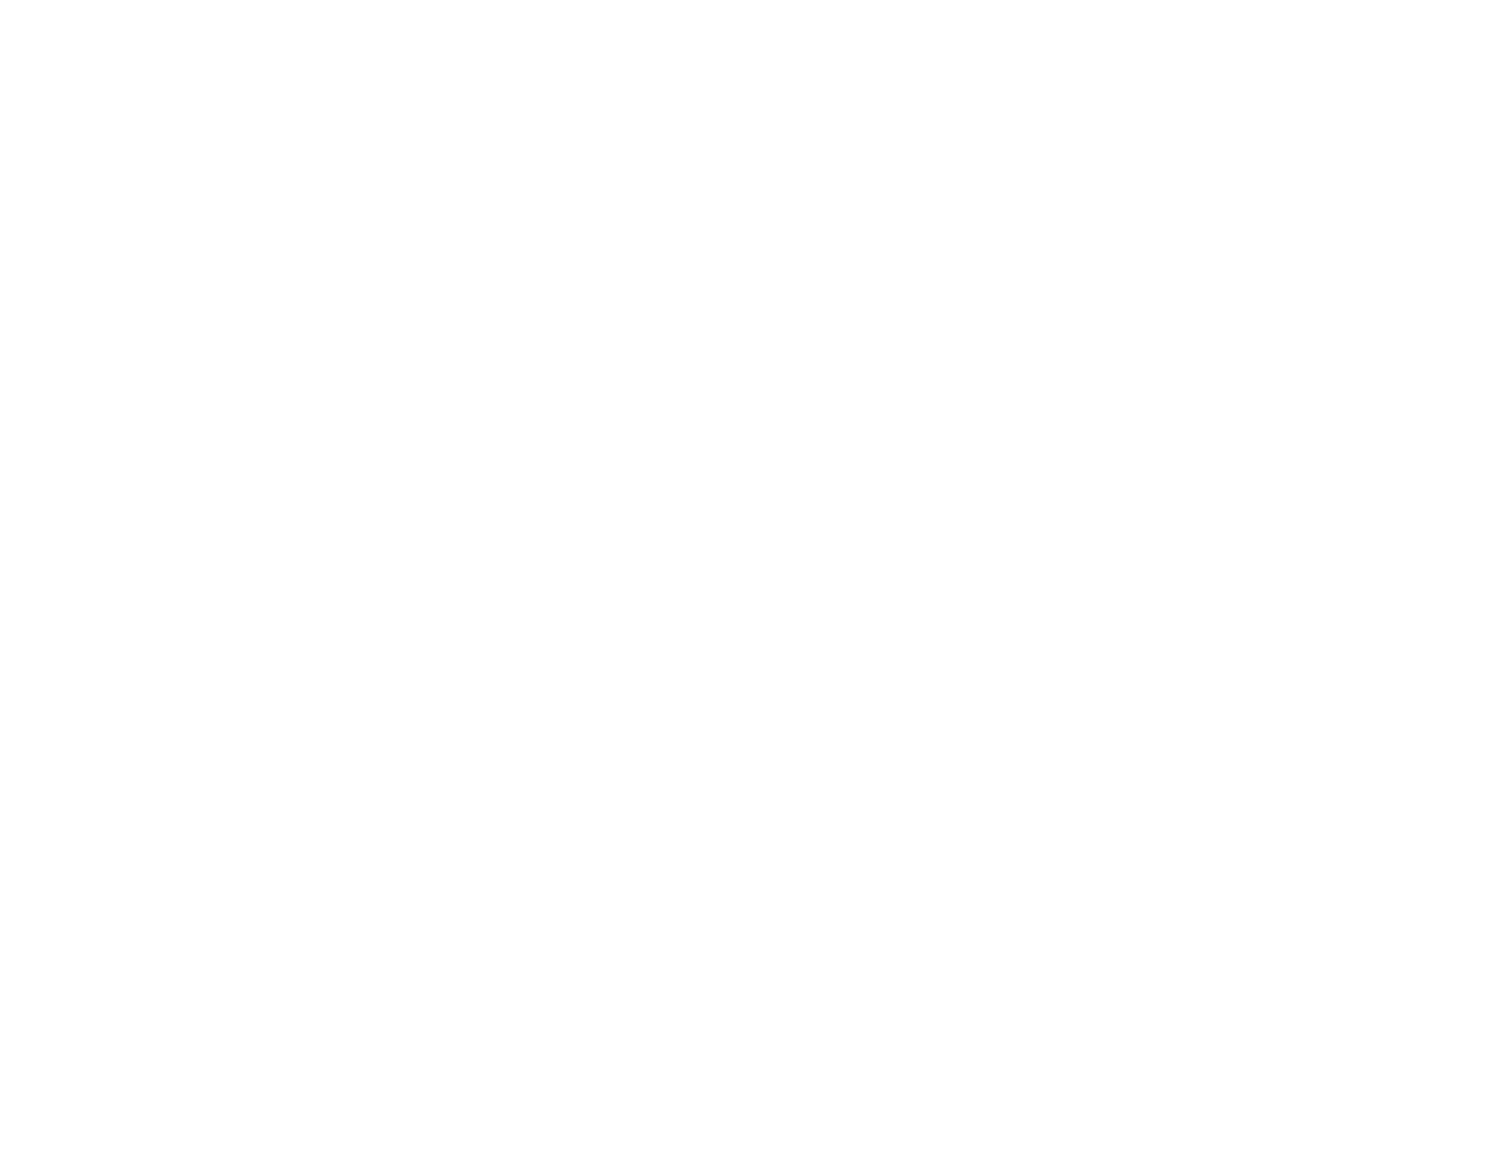 WILDEdge Botanicals